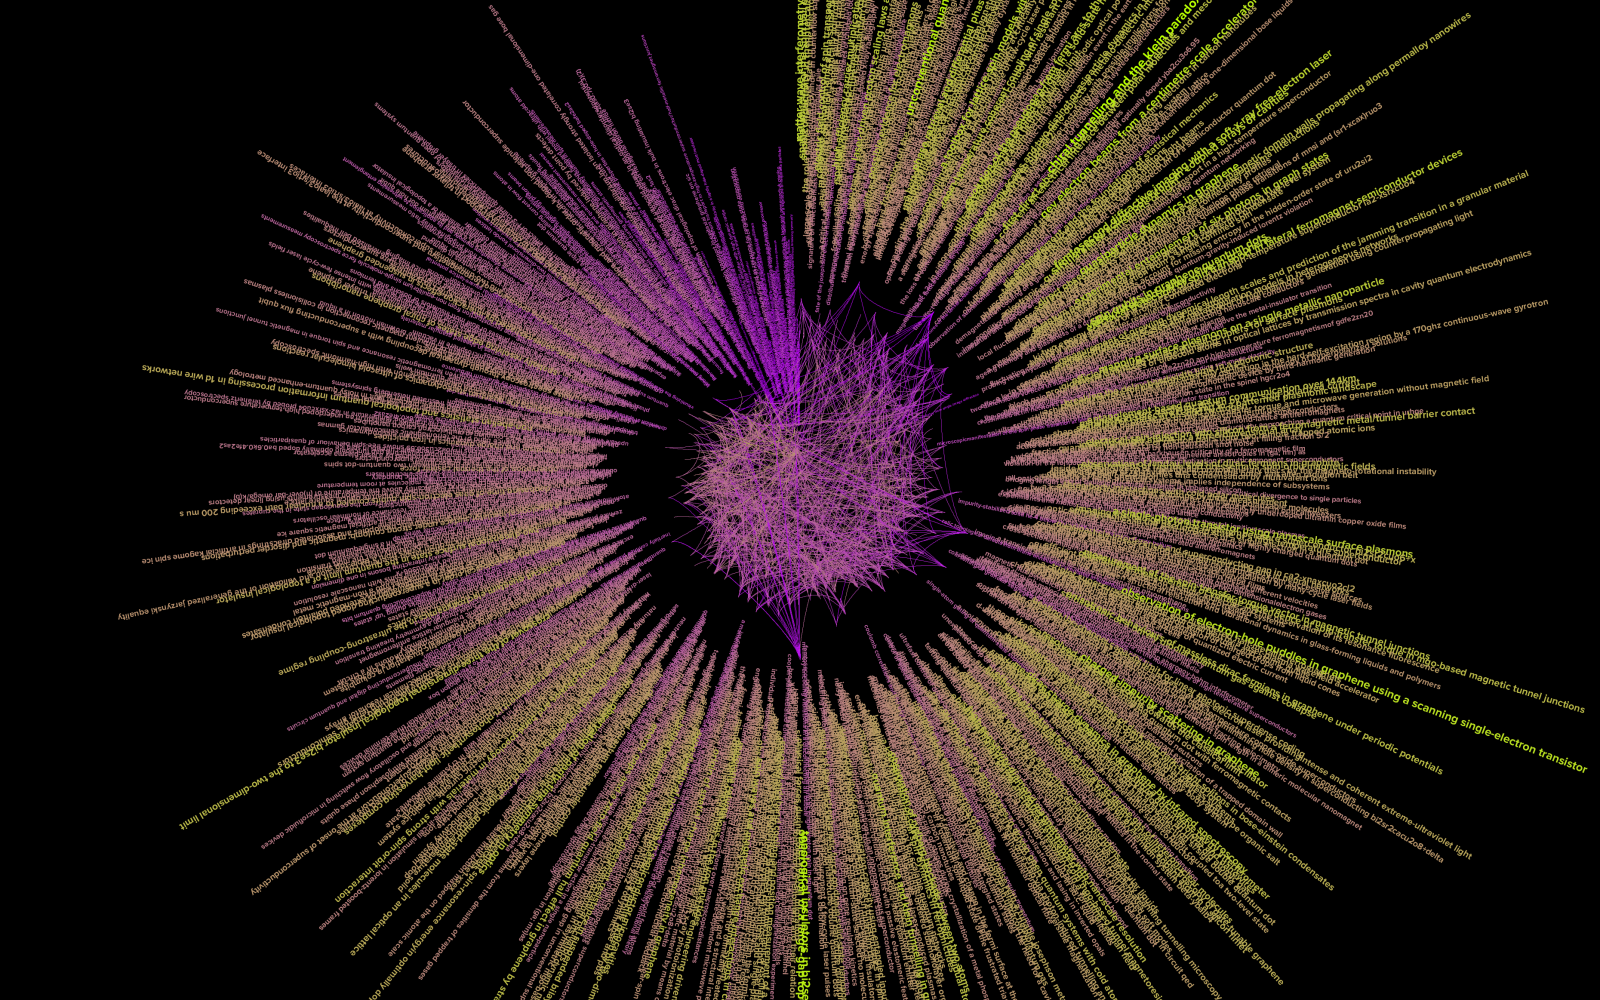 Zu sehen ist eine Visualisierung eines Netzwerkes. Die Form ähnelt hierbei einem Kreis, der sich aus einzelnen, zum Zentrum gerichteten Linien zusammensetzt. Das Zentrum ist ein kleinerer, violettfarbener Kreis